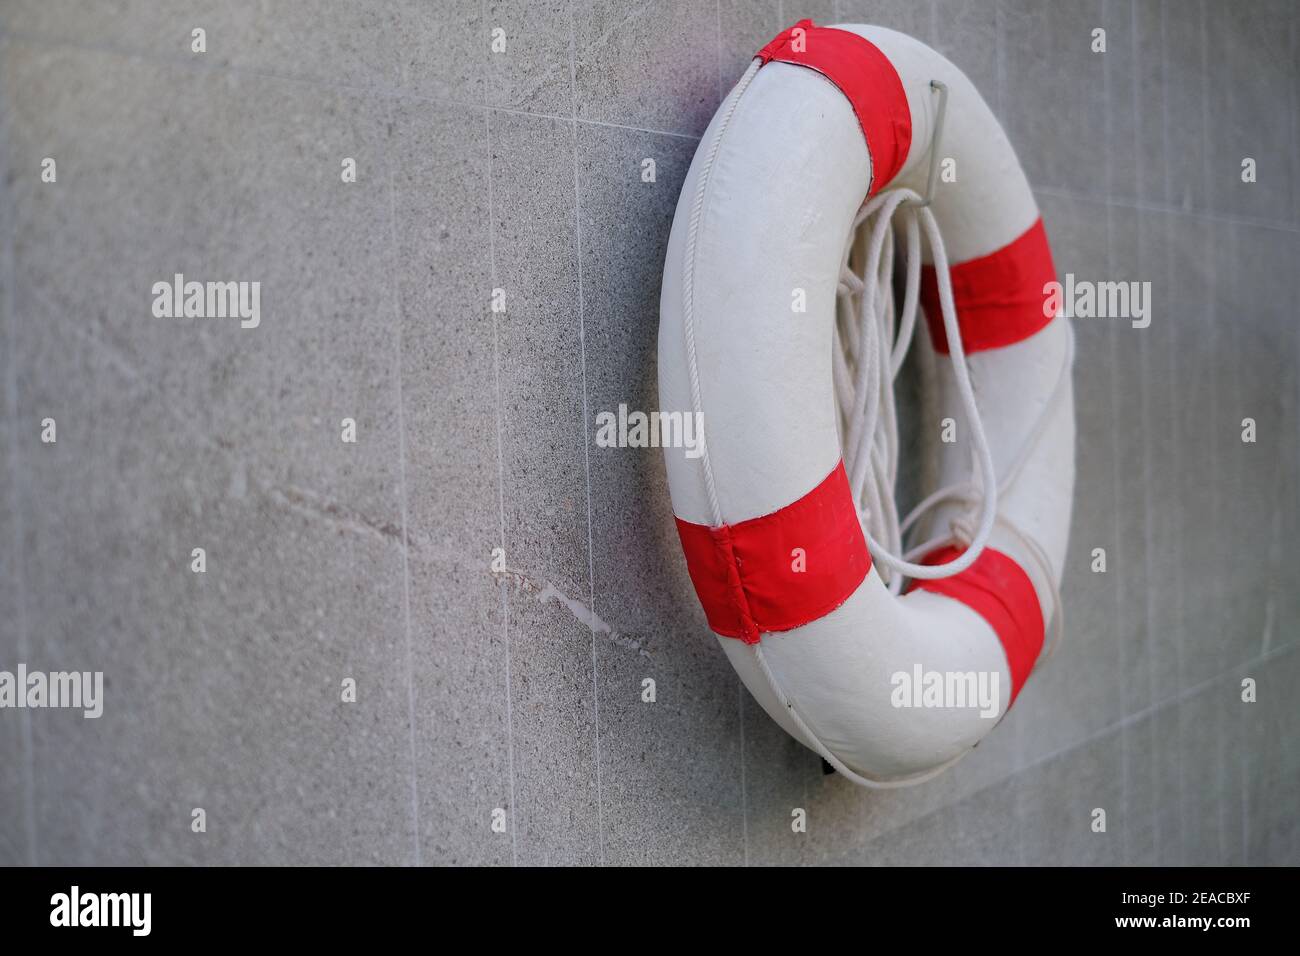 Un sauveteur rouge et blanc avec corde, accroché sur un mur près d'une piscine pour la sécurité pour sauver les nageurs noyés. Banque D'Images